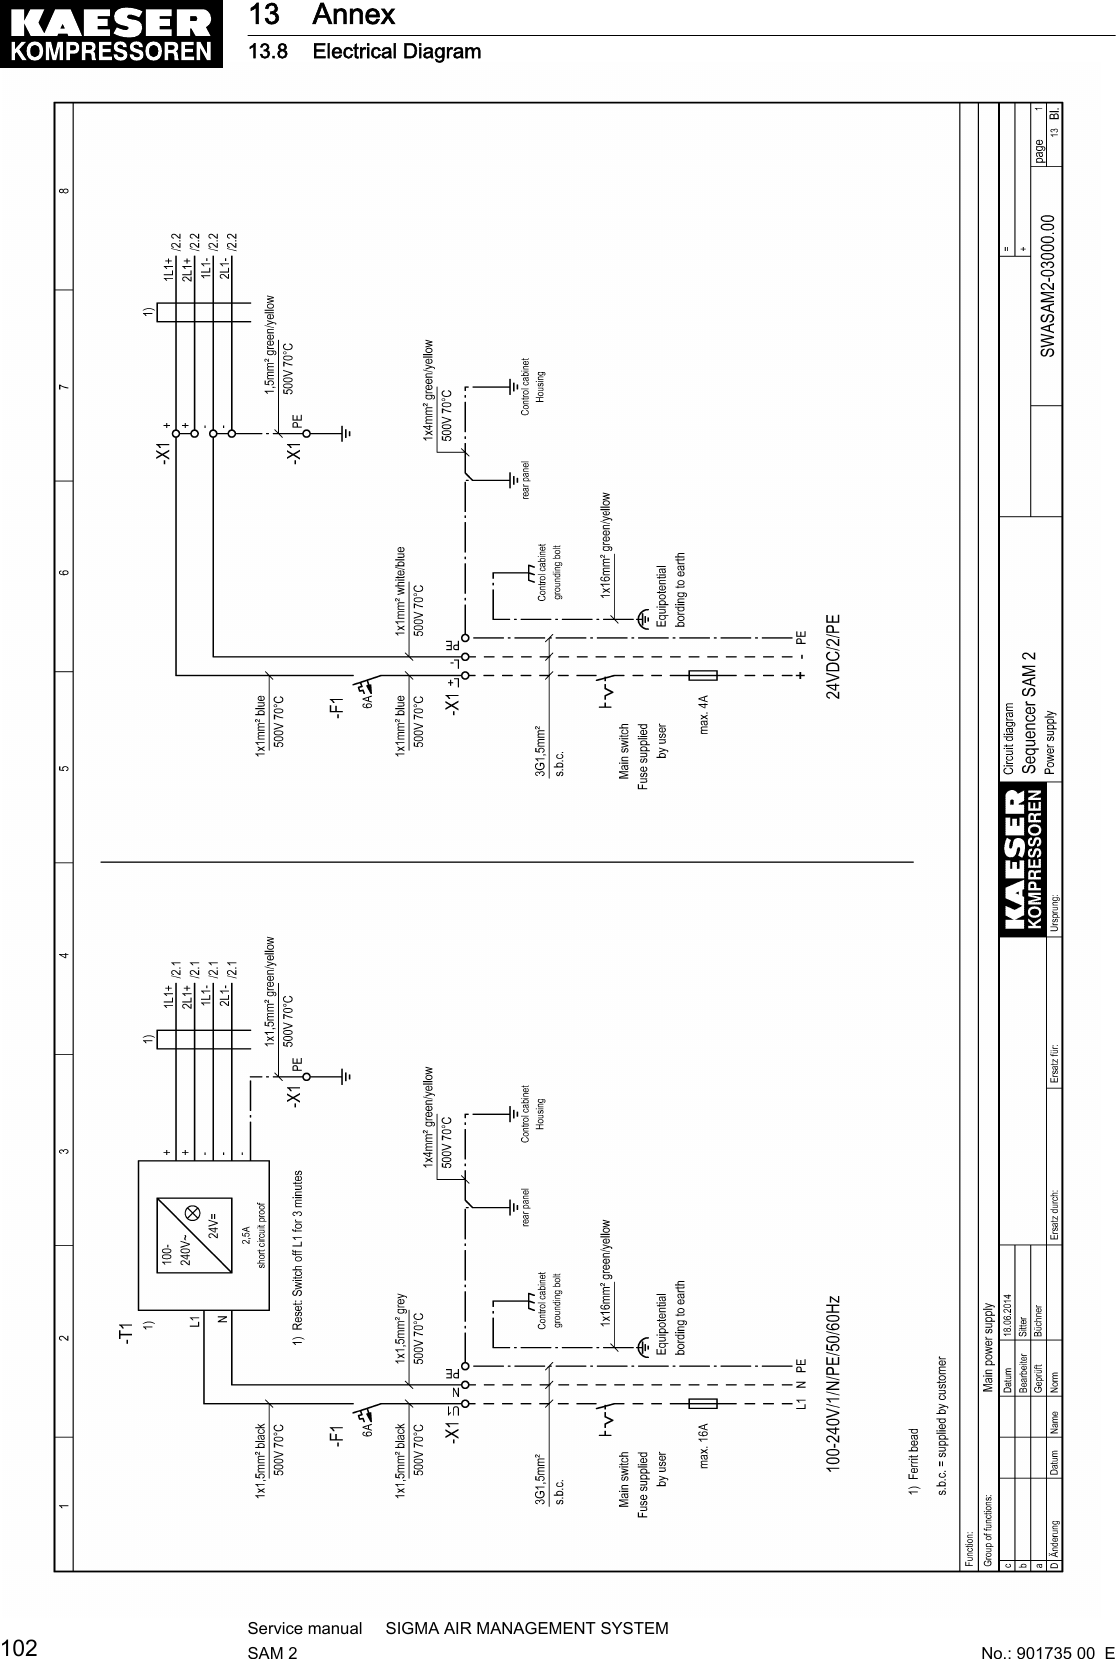 13 Annex13.8 Electrical Diagram102Service manual     SIGMA AIR MANAGEMENT SYSTEMSAM 2  No.: 901735 00  E